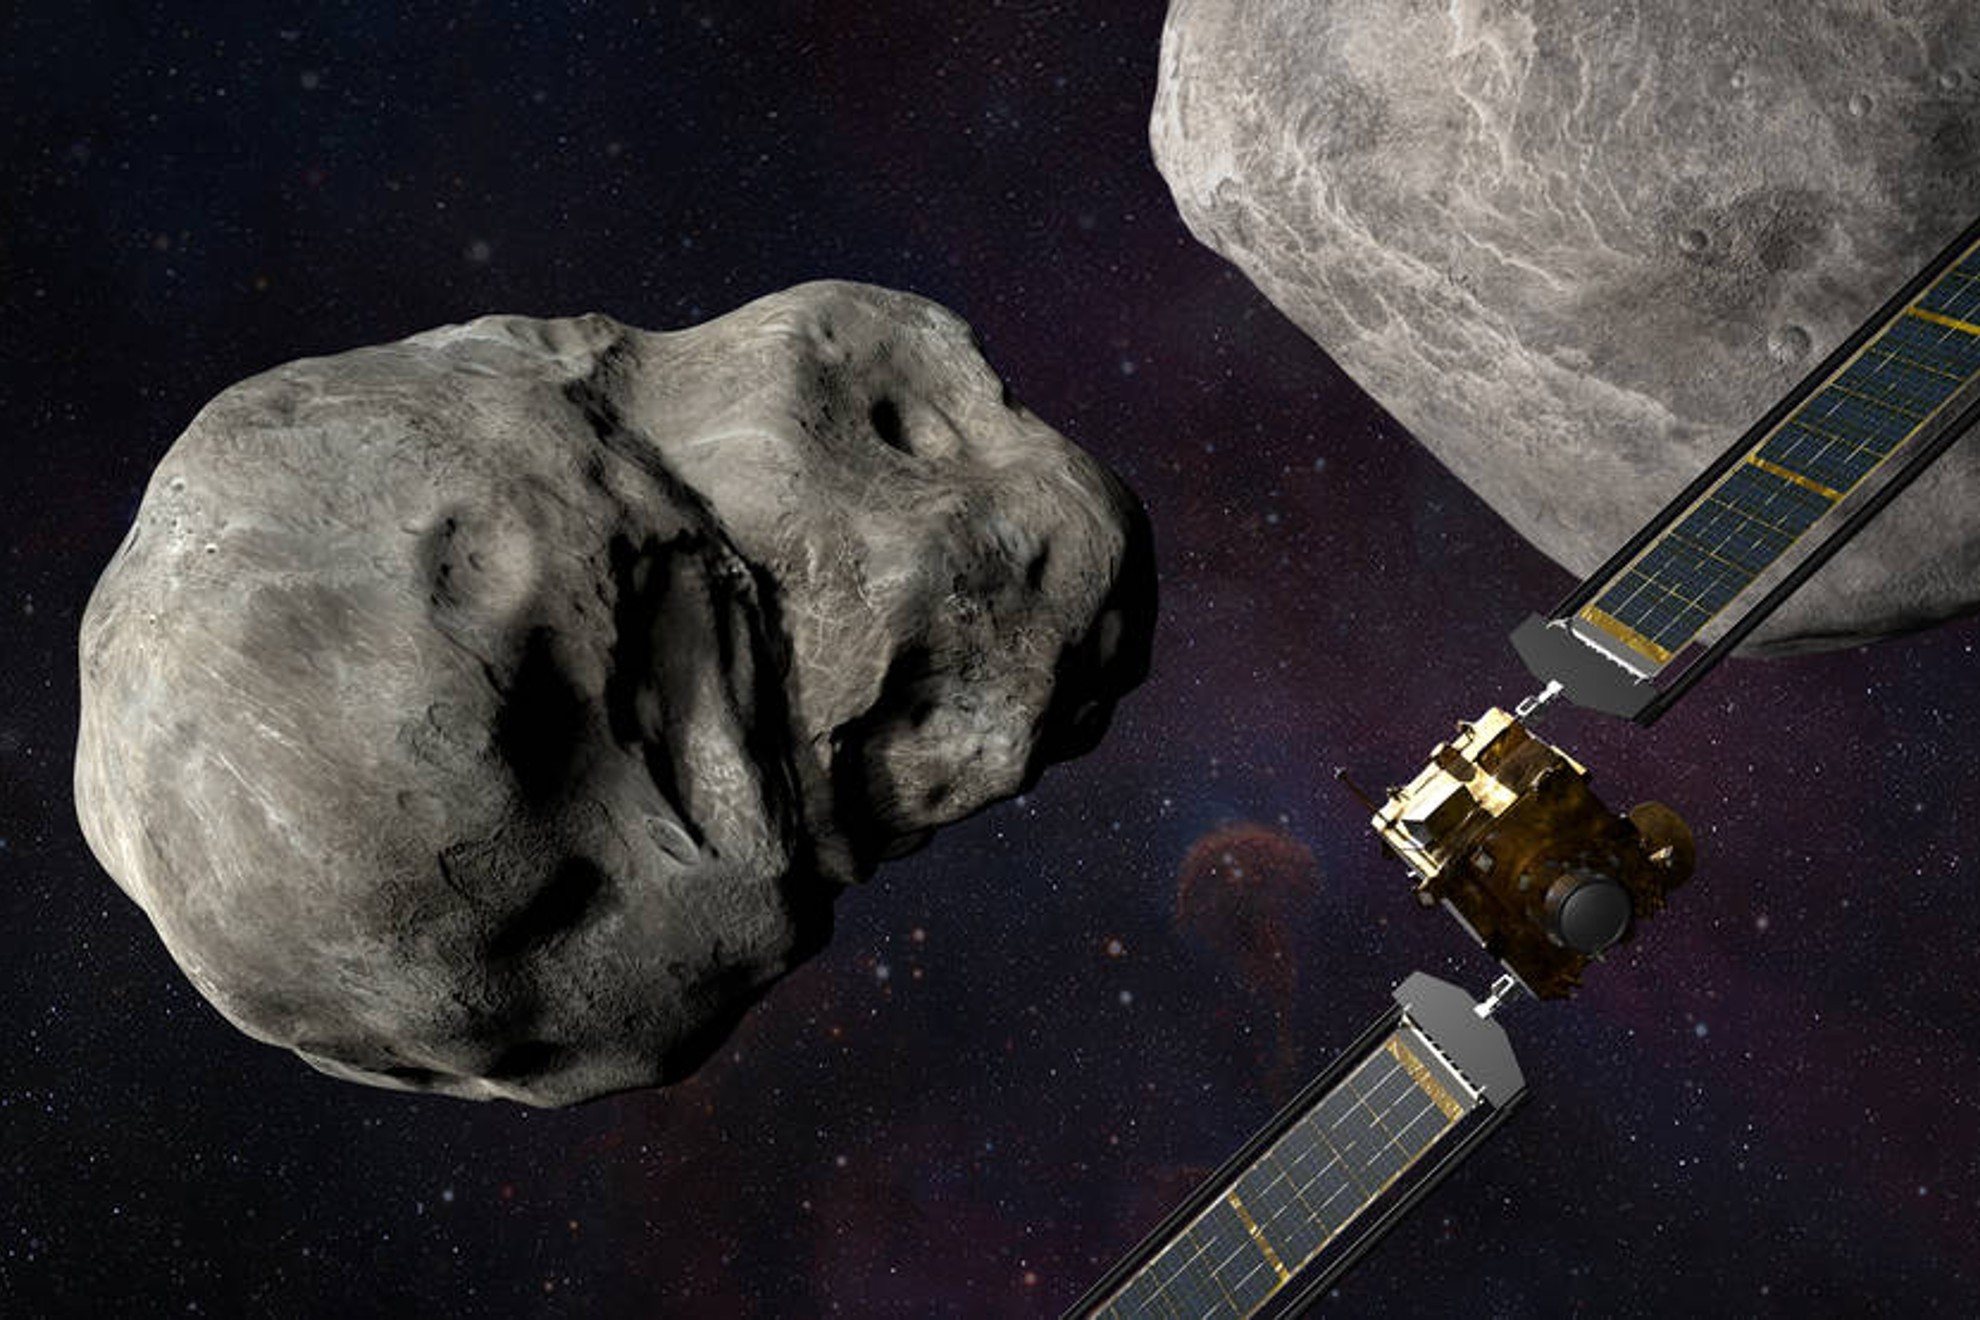 Todo lo que debes saber del impacto premeditado de una nave de la NASA contra el asteroide | nasa.gov